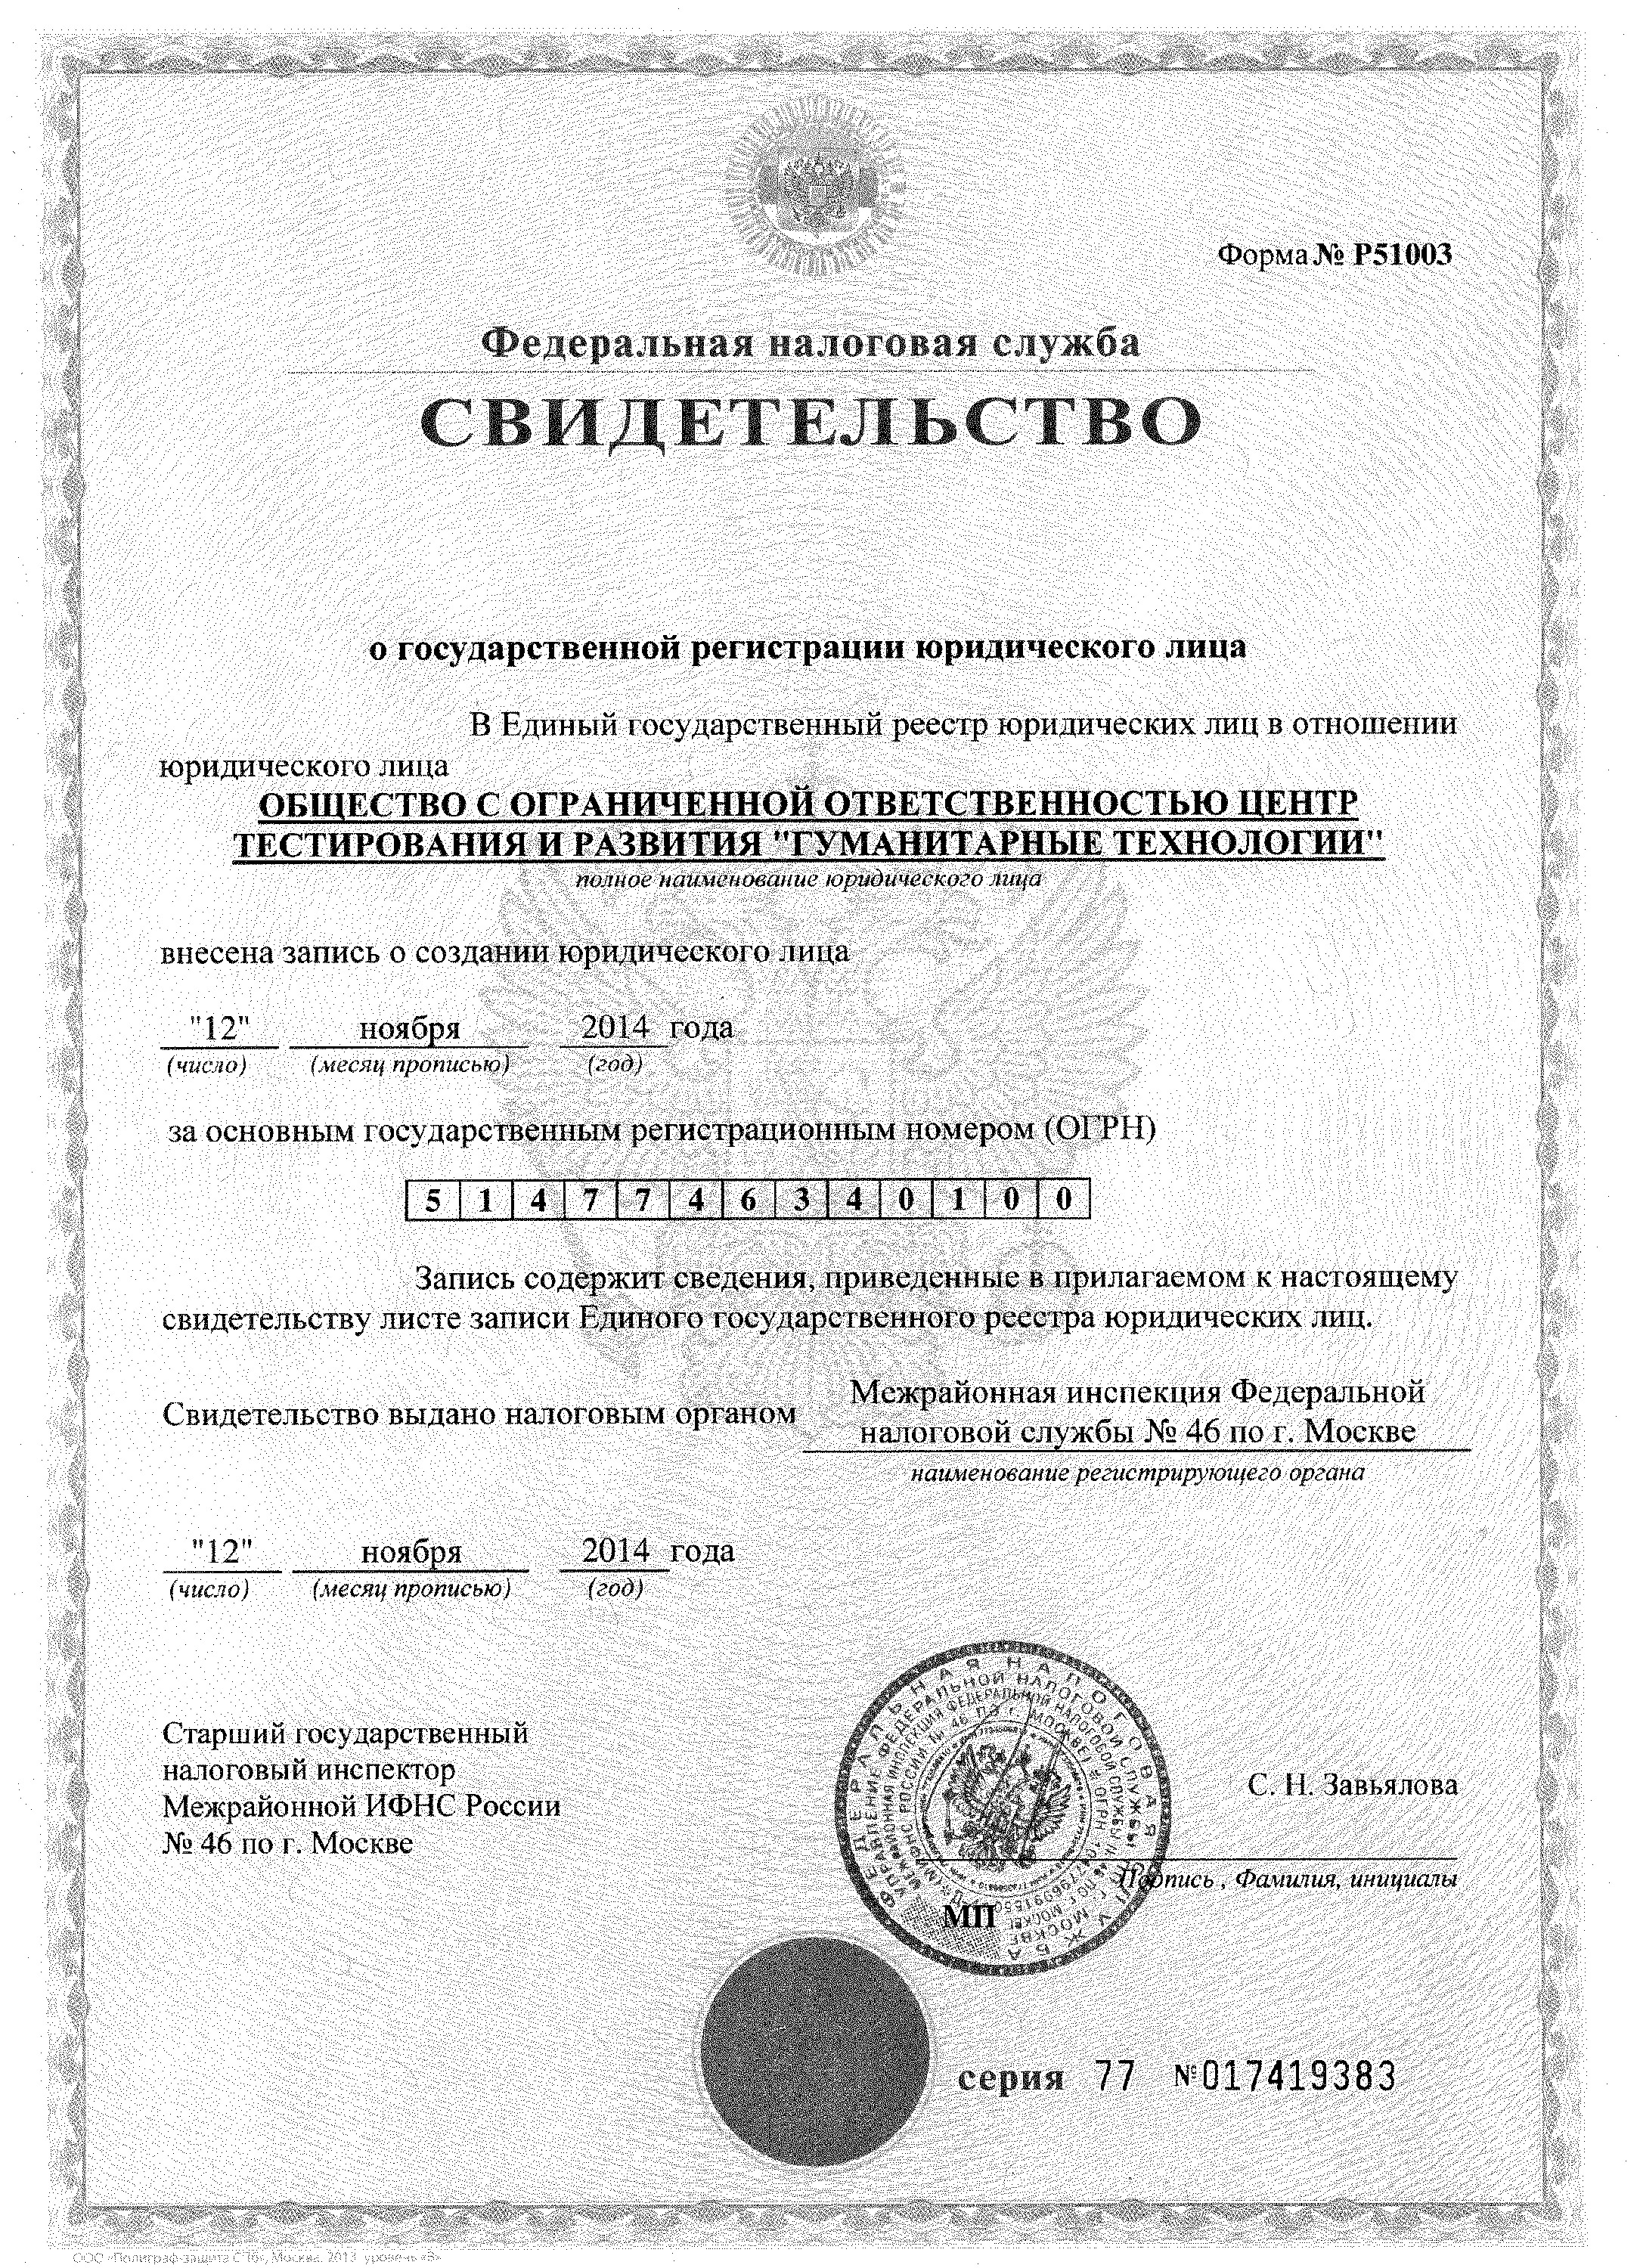 Свидетельство о регистрации юридического лица ООО "ЦТР "Гуманитарные технологии"